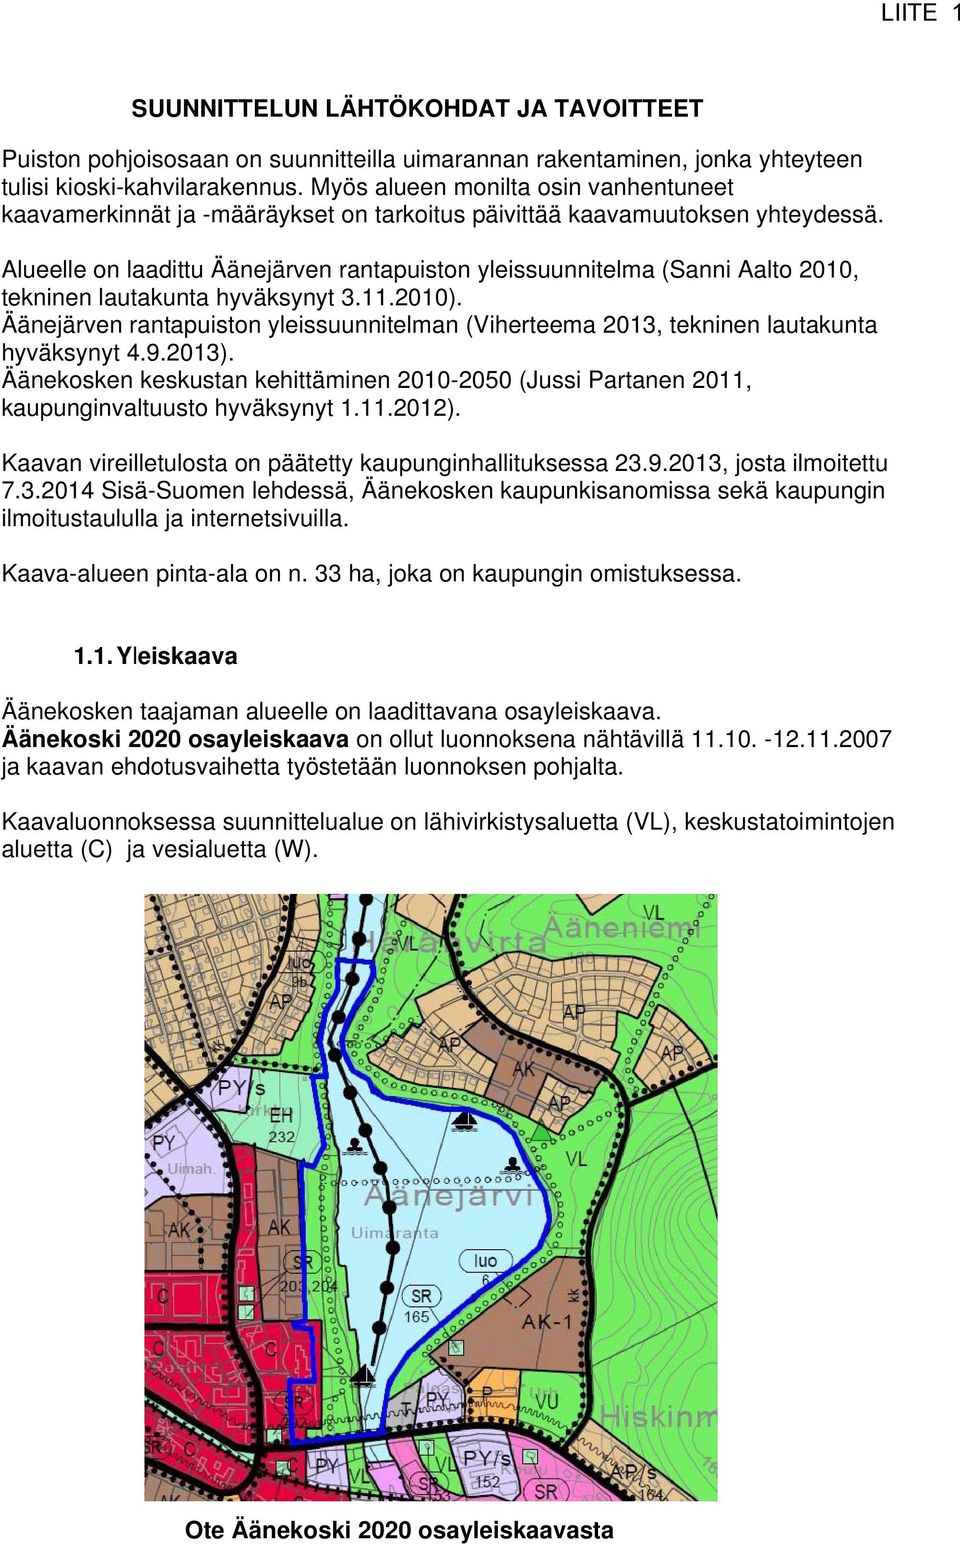 Alueelle on laadittu Äänejärven rantapuiston yleissuunnitelma (Sanni Aalto 2010, tekninen lautakunta hyväksynyt 3.11.2010).